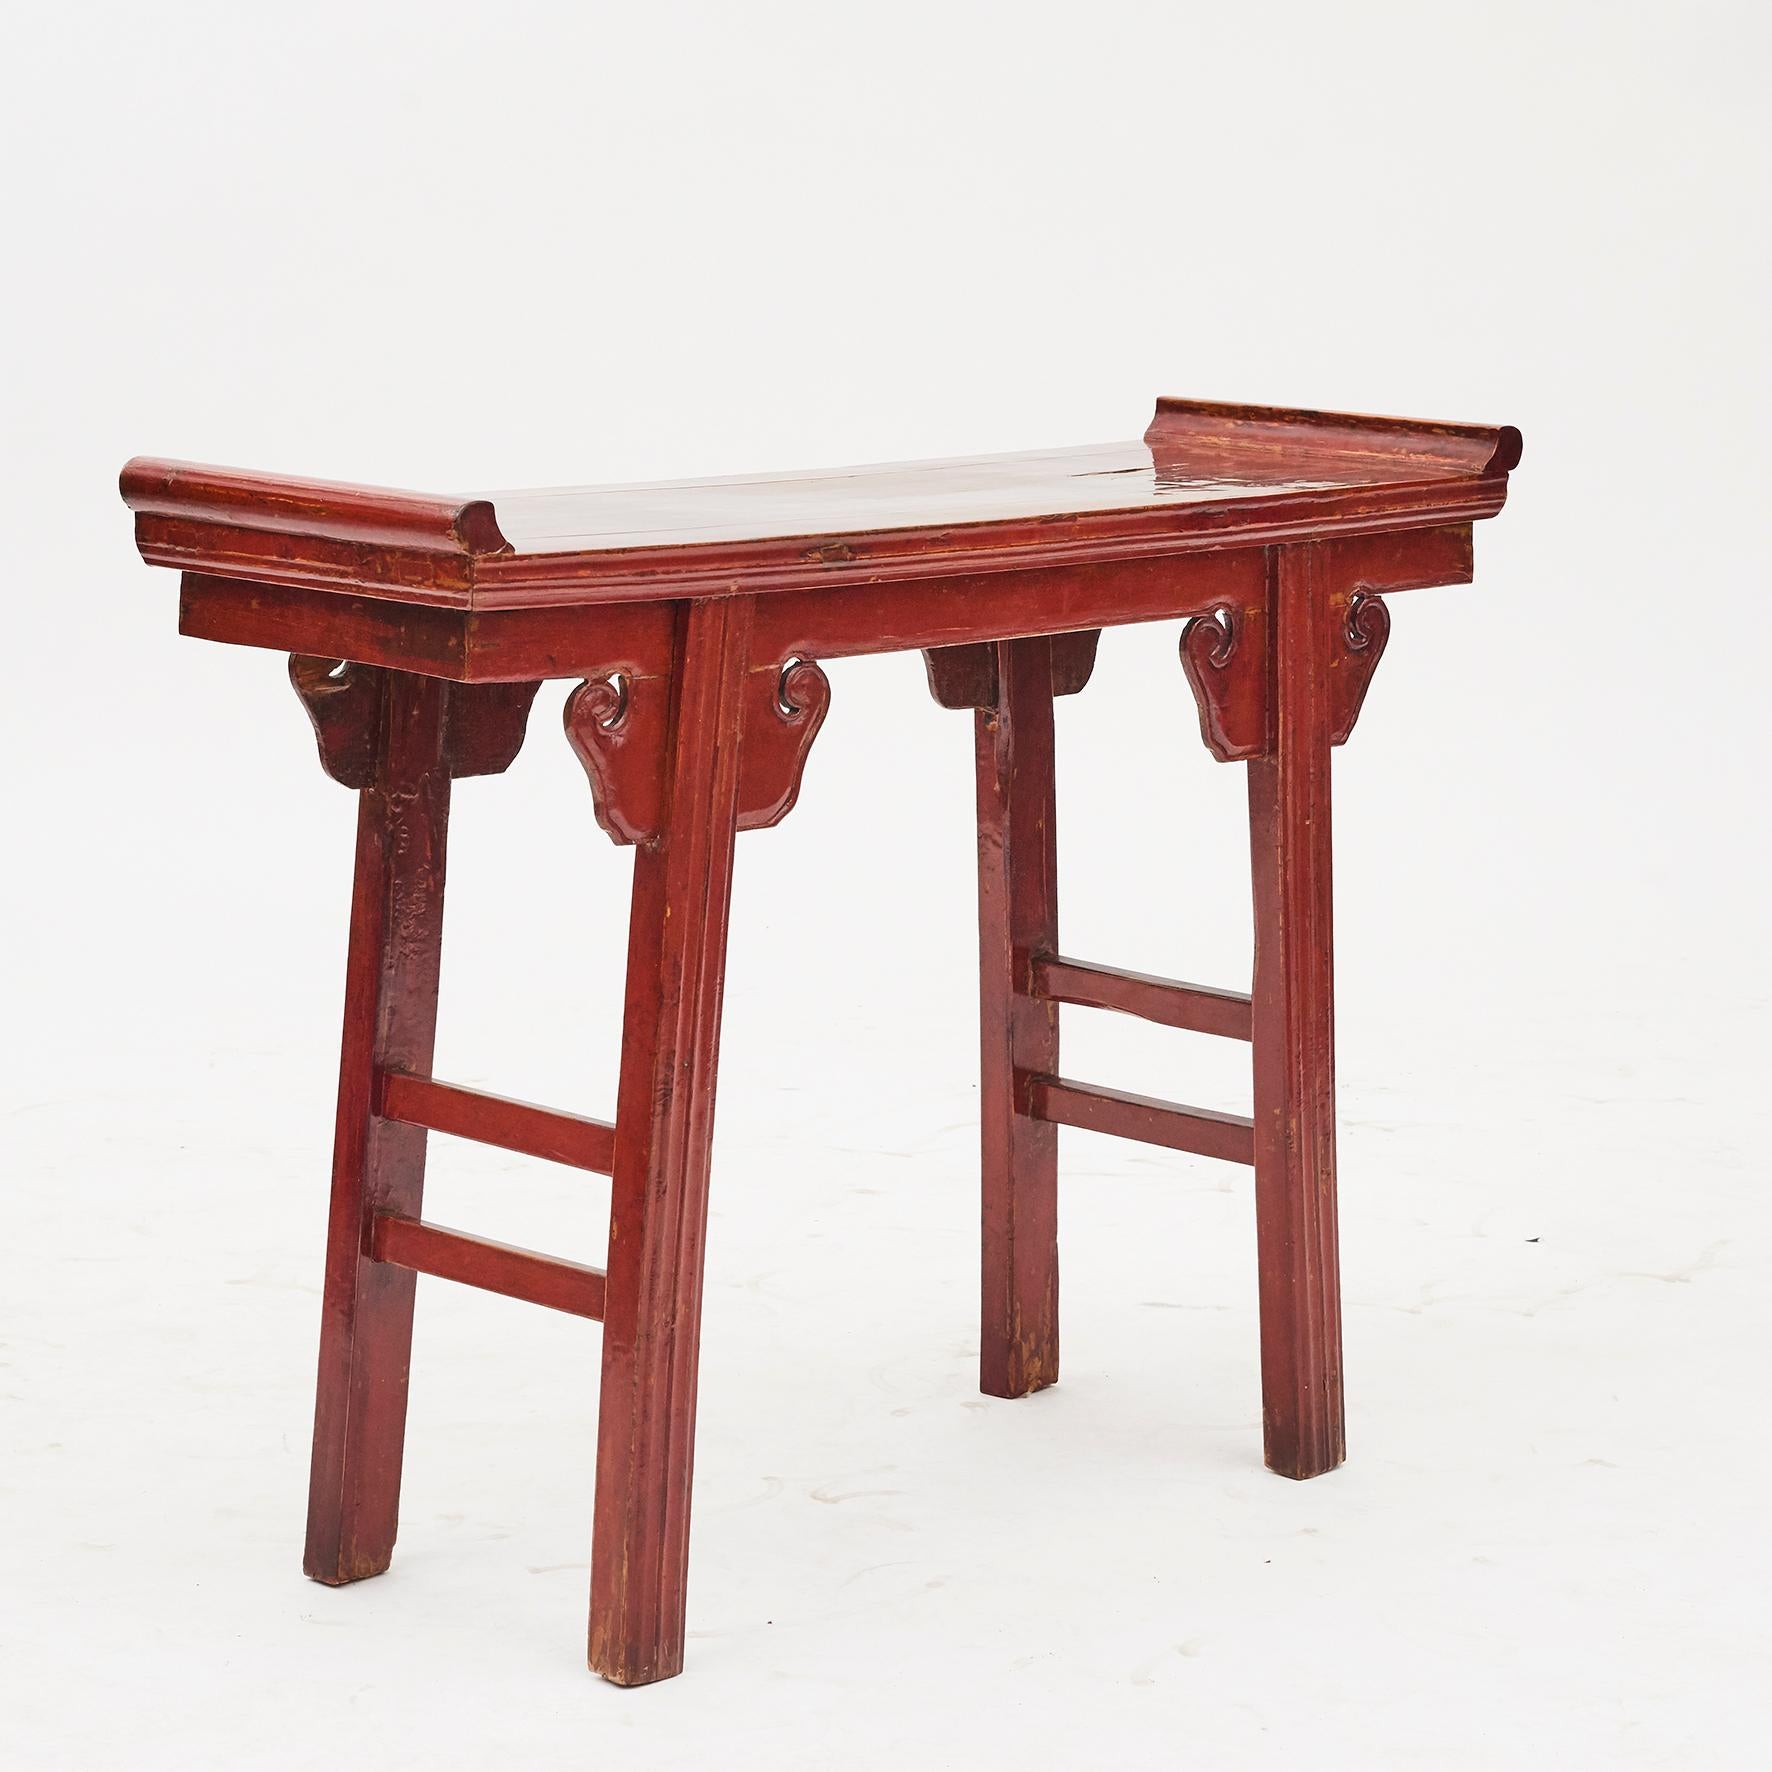 Kleiner Altar / Abendmahlstisch aus Pfirsichholz aus der Provinz Zhejiang in China. Originalzustand mit rotem Lack mit altersbedingter Patina.

Ming-Stil, Mitte des 19. Jahrhunderts.